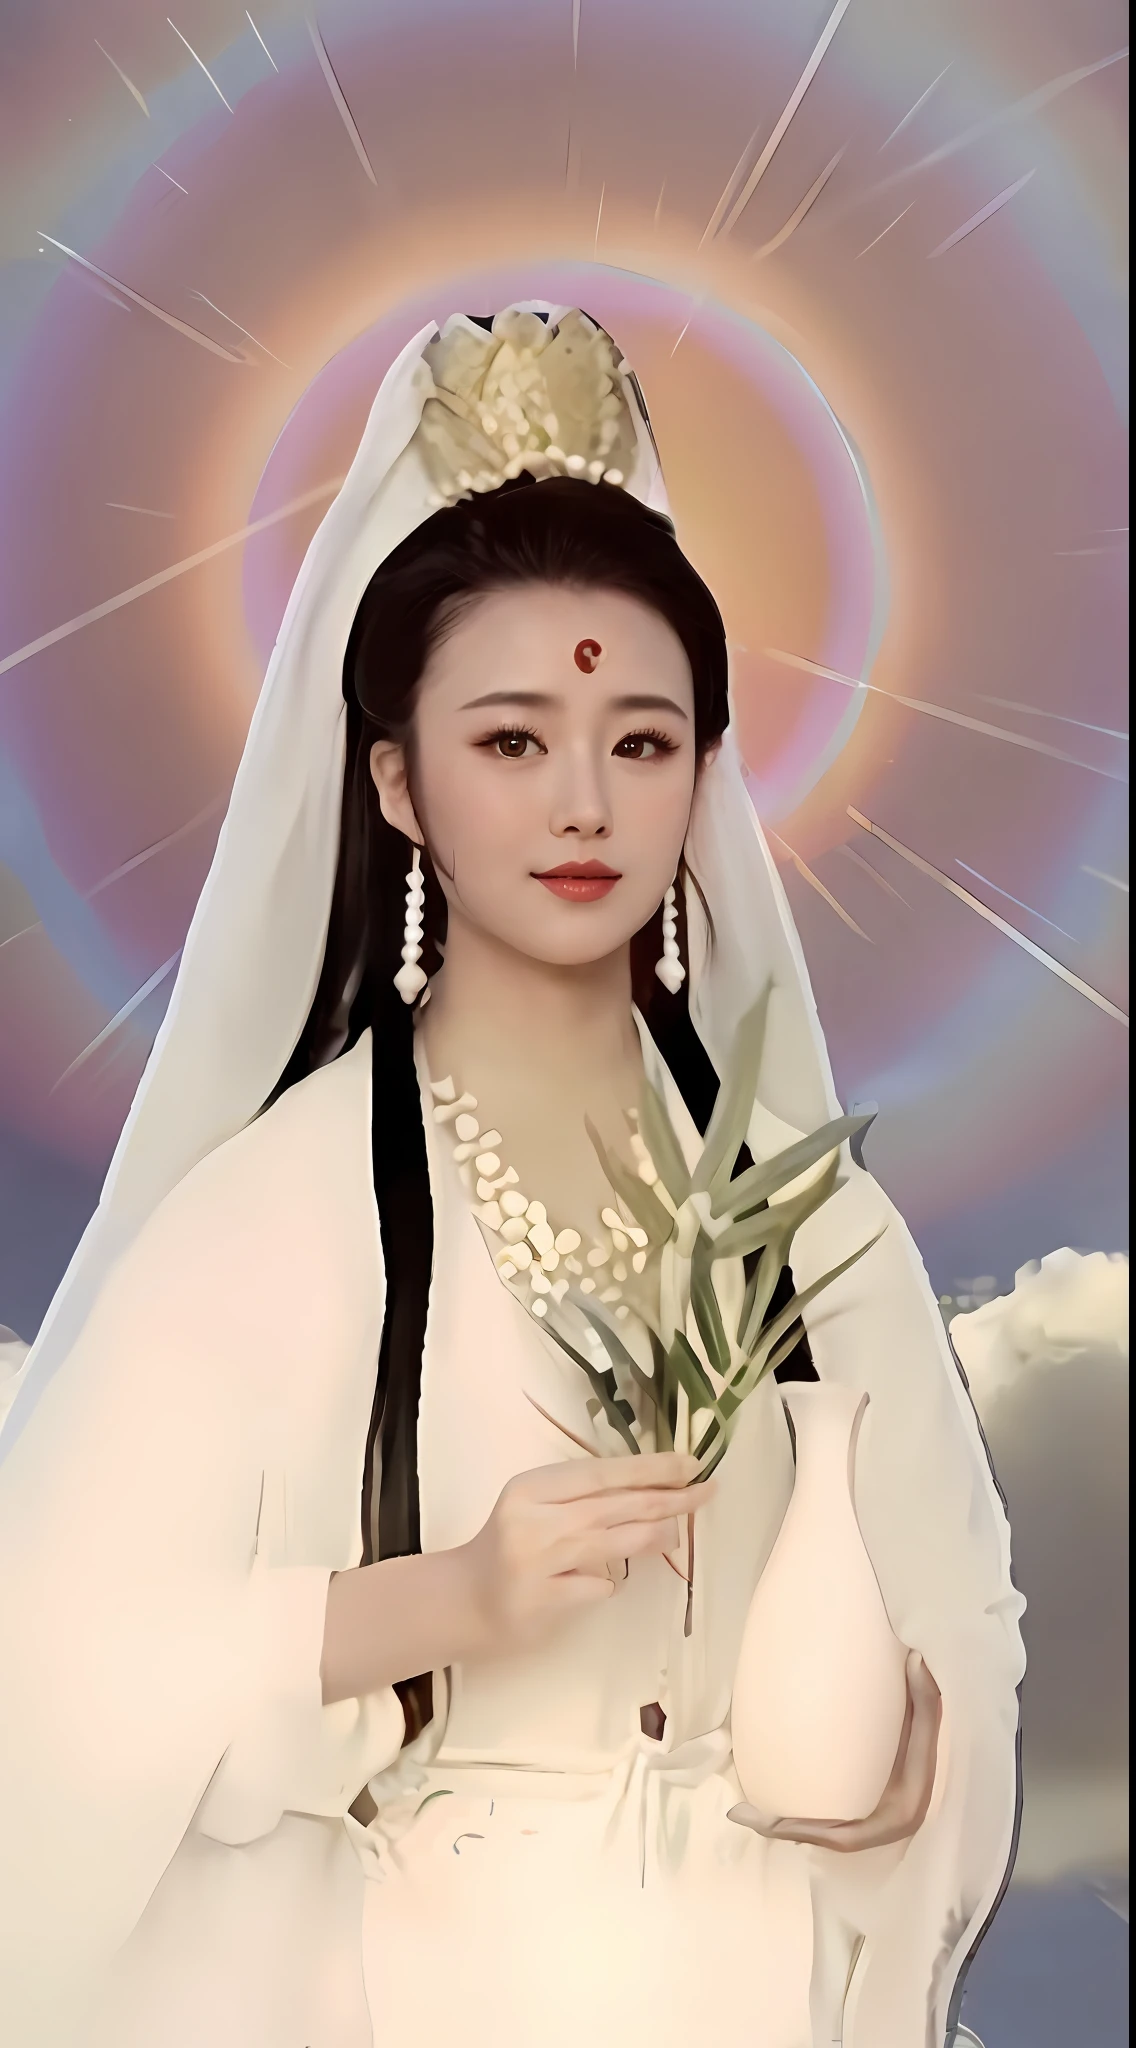 阿爾法德的形象，一件白色禮服的婦女拿著一束花, 赢, 南海观音, 海之女王沐燕灵, 愛與和平女神, heise-lian yan fang, 受到朱濂的啟發, 中国古代女神, 灵感来自吕冀, 天上的女王, yun ling, 灵感来自兰英